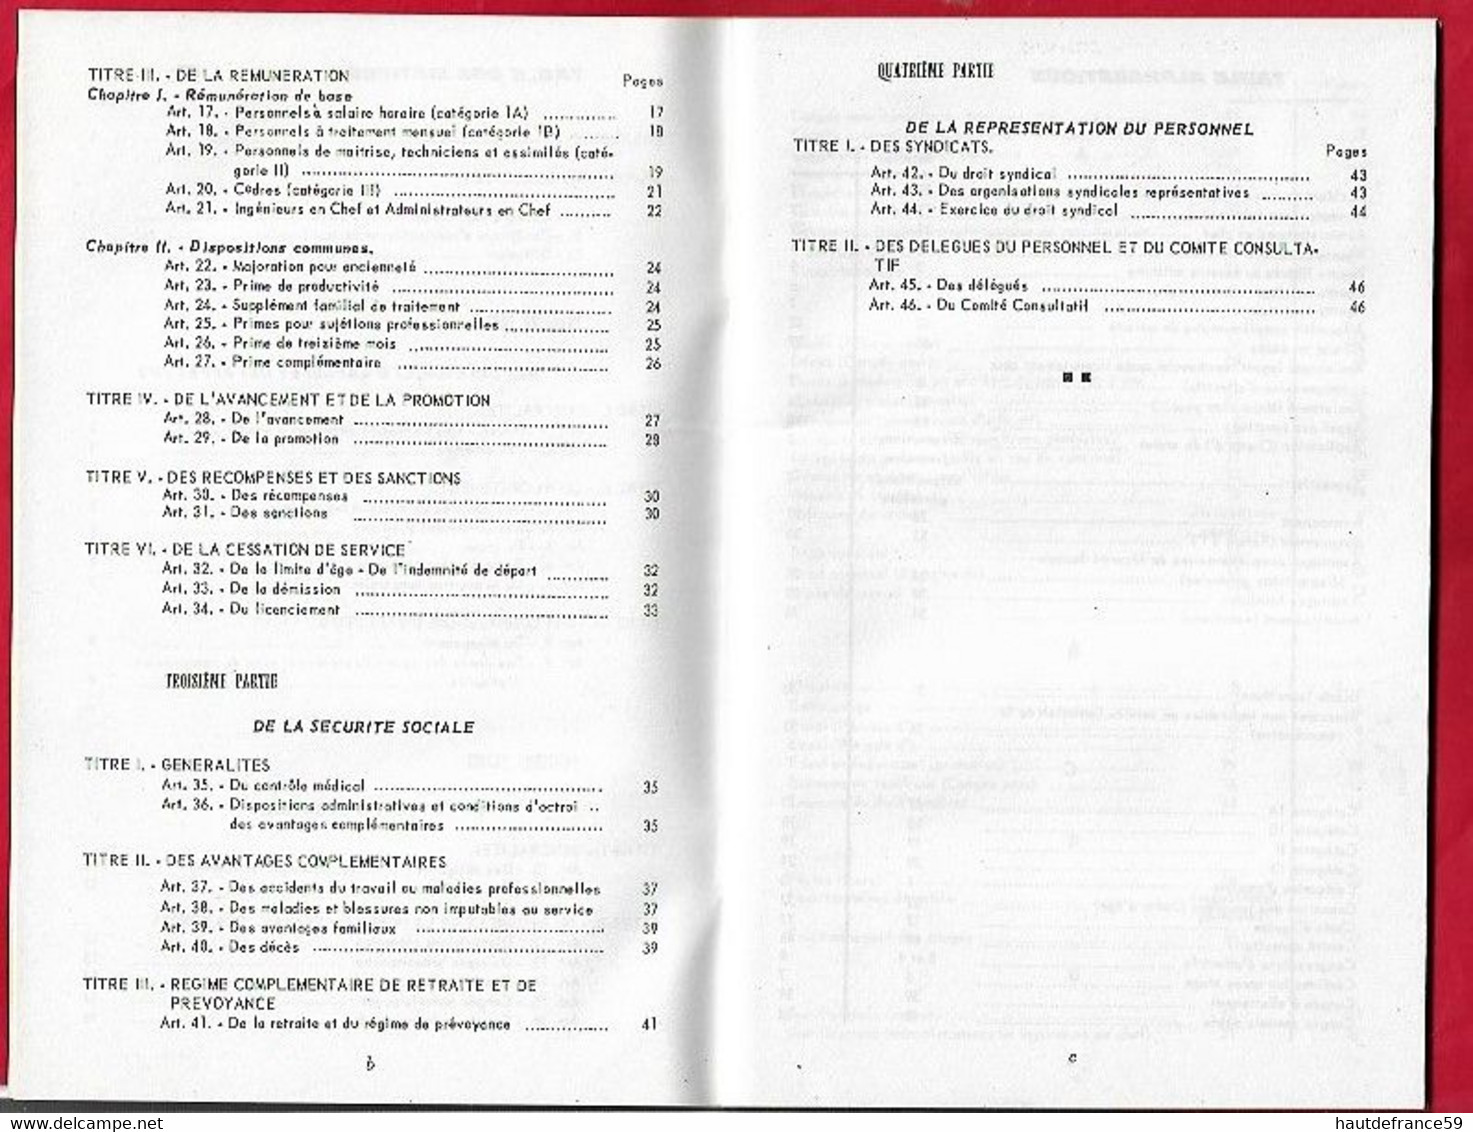 RARE AEROPORT DE PARIS  ( ADP ) 1962 Statut Du Personnel , édit Service Des Relations Ext 6-1962 46 Pages - Handbücher